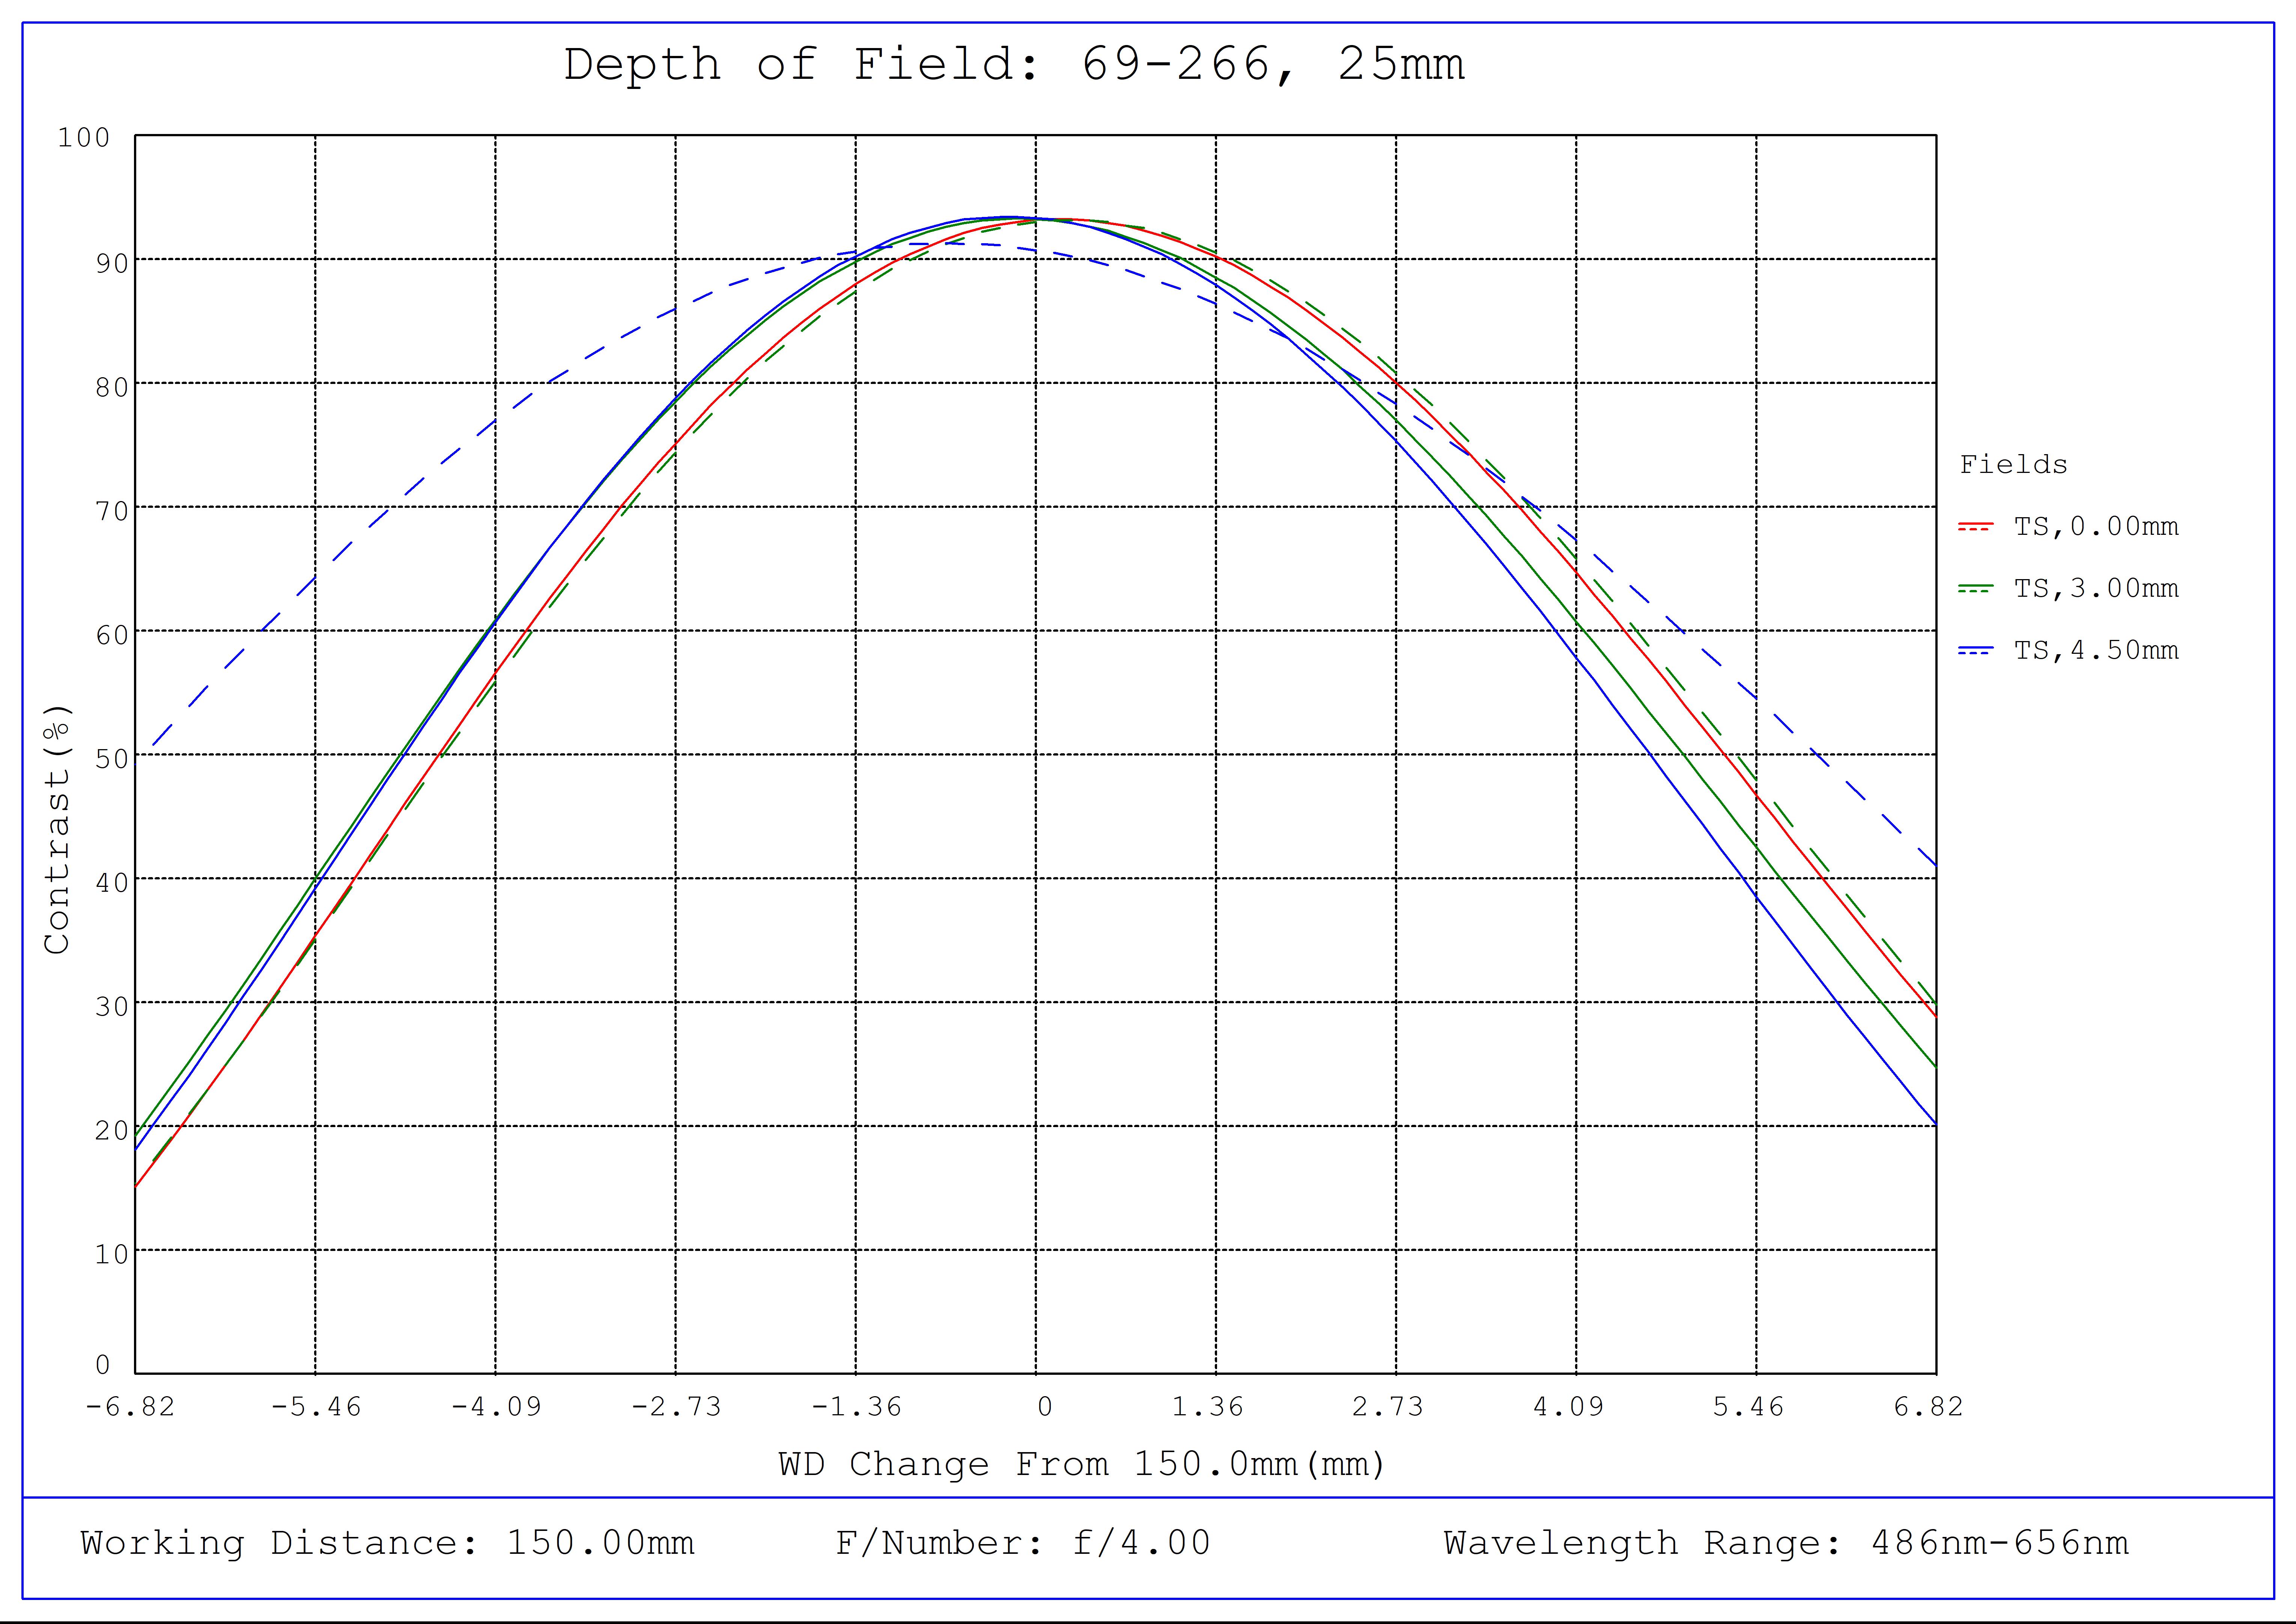 #69-266, 25mm FL f/4, Blue Series M12 Lens, Depth of Field Plot, 150mm Working Distance, f4